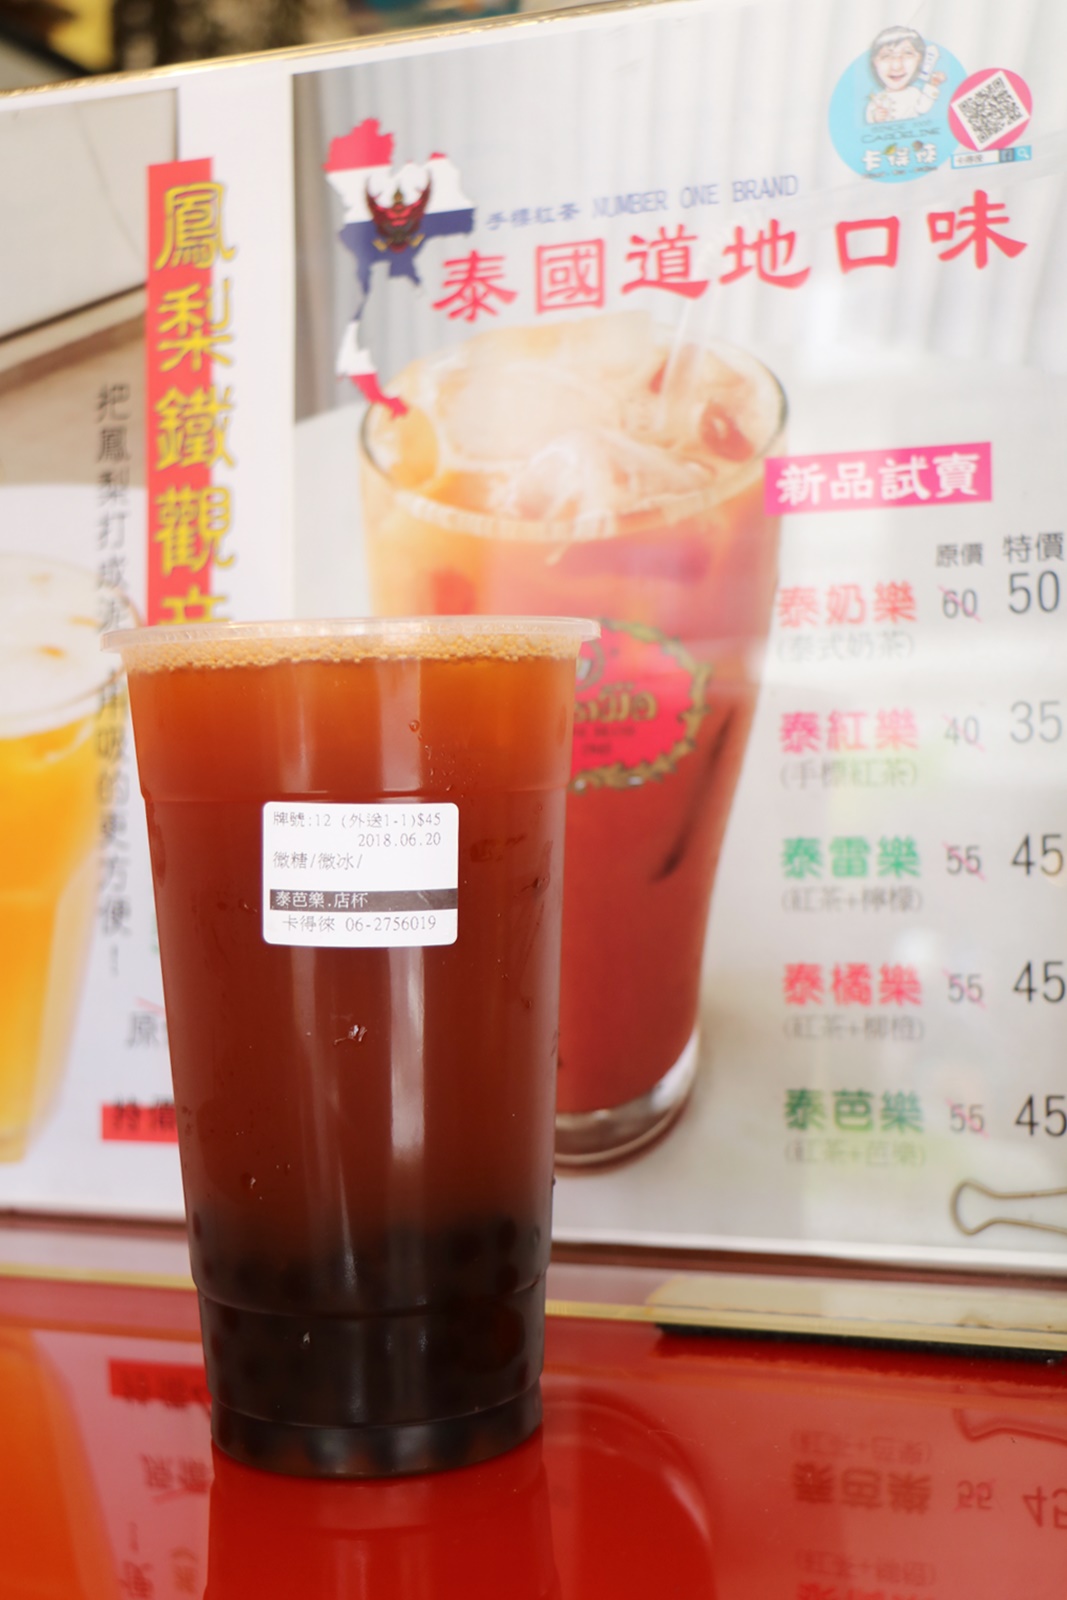 台南 東區。卡得徠創意飲料，台南學子最愛、平價好喝冷飲 x 近台南火車站